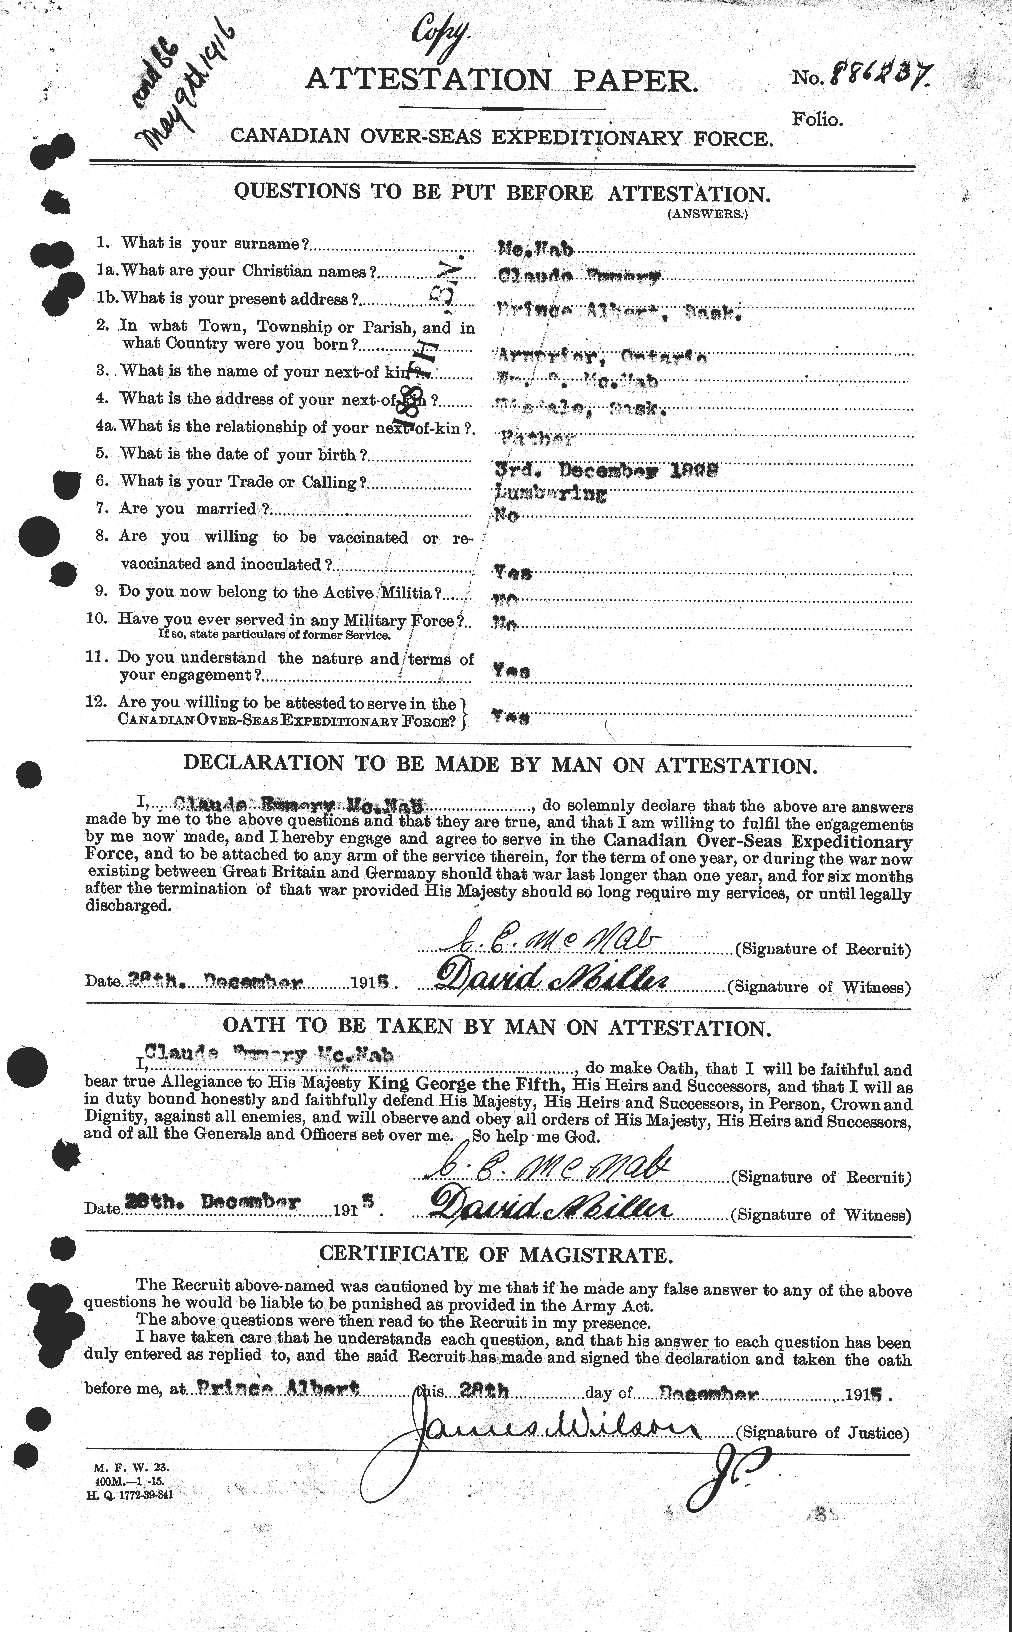 Dossiers du Personnel de la Première Guerre mondiale - CEC 539527a